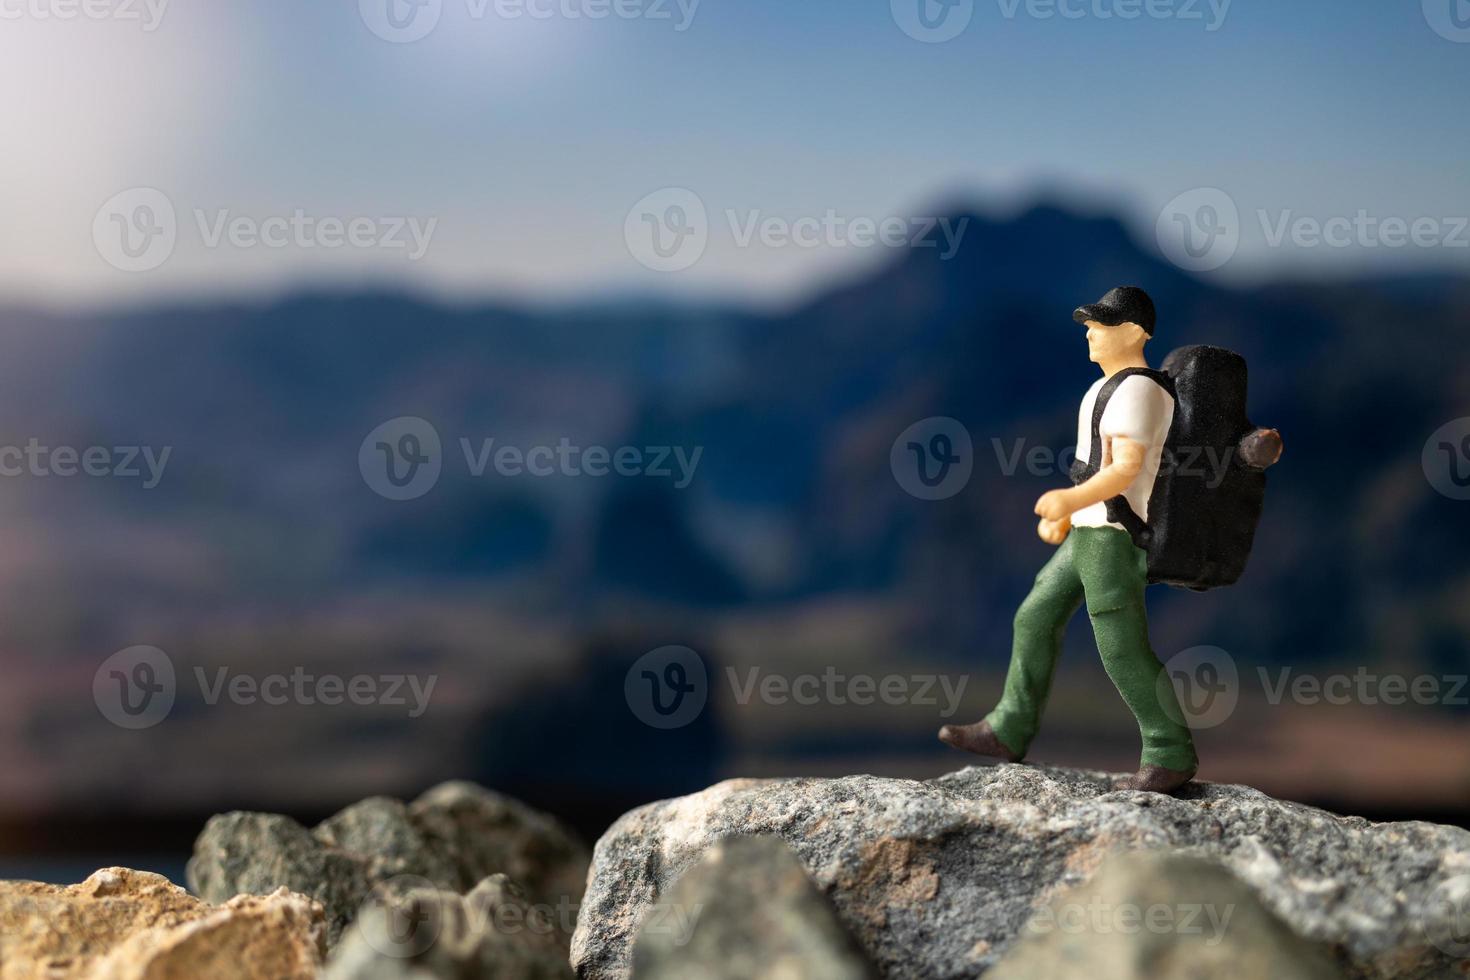 Miniaturreisender mit Rucksack, der auf den Felsen geht foto